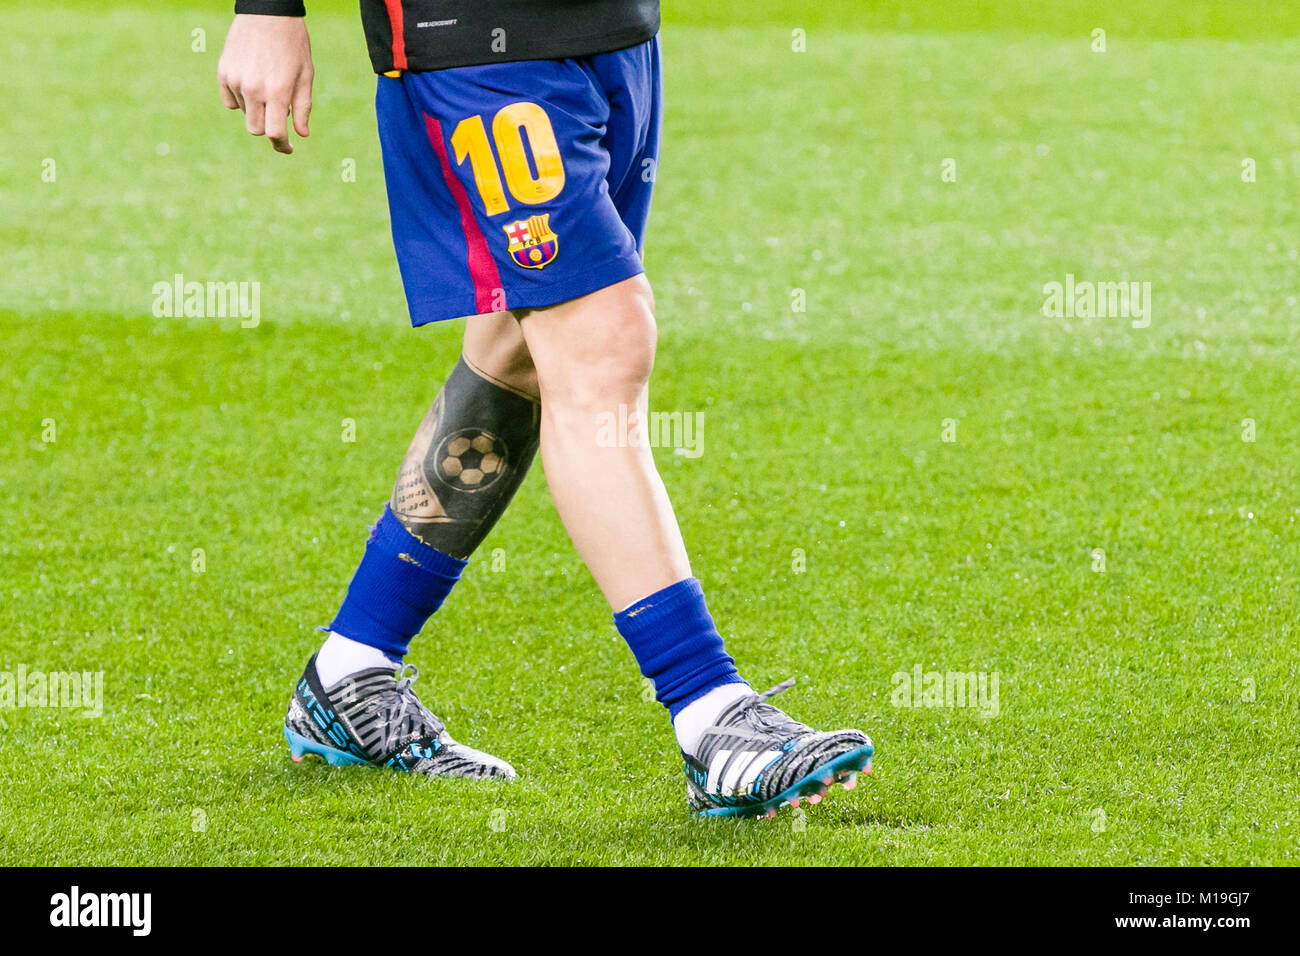 Barcelona, España. 28 ene, 2018. Avance del FC Barcelona Lionel Messi (10)  botas durante el partido entre el FC Barcelona contra el Deportivo Alaves,  para la ronda 21 de la Liga de